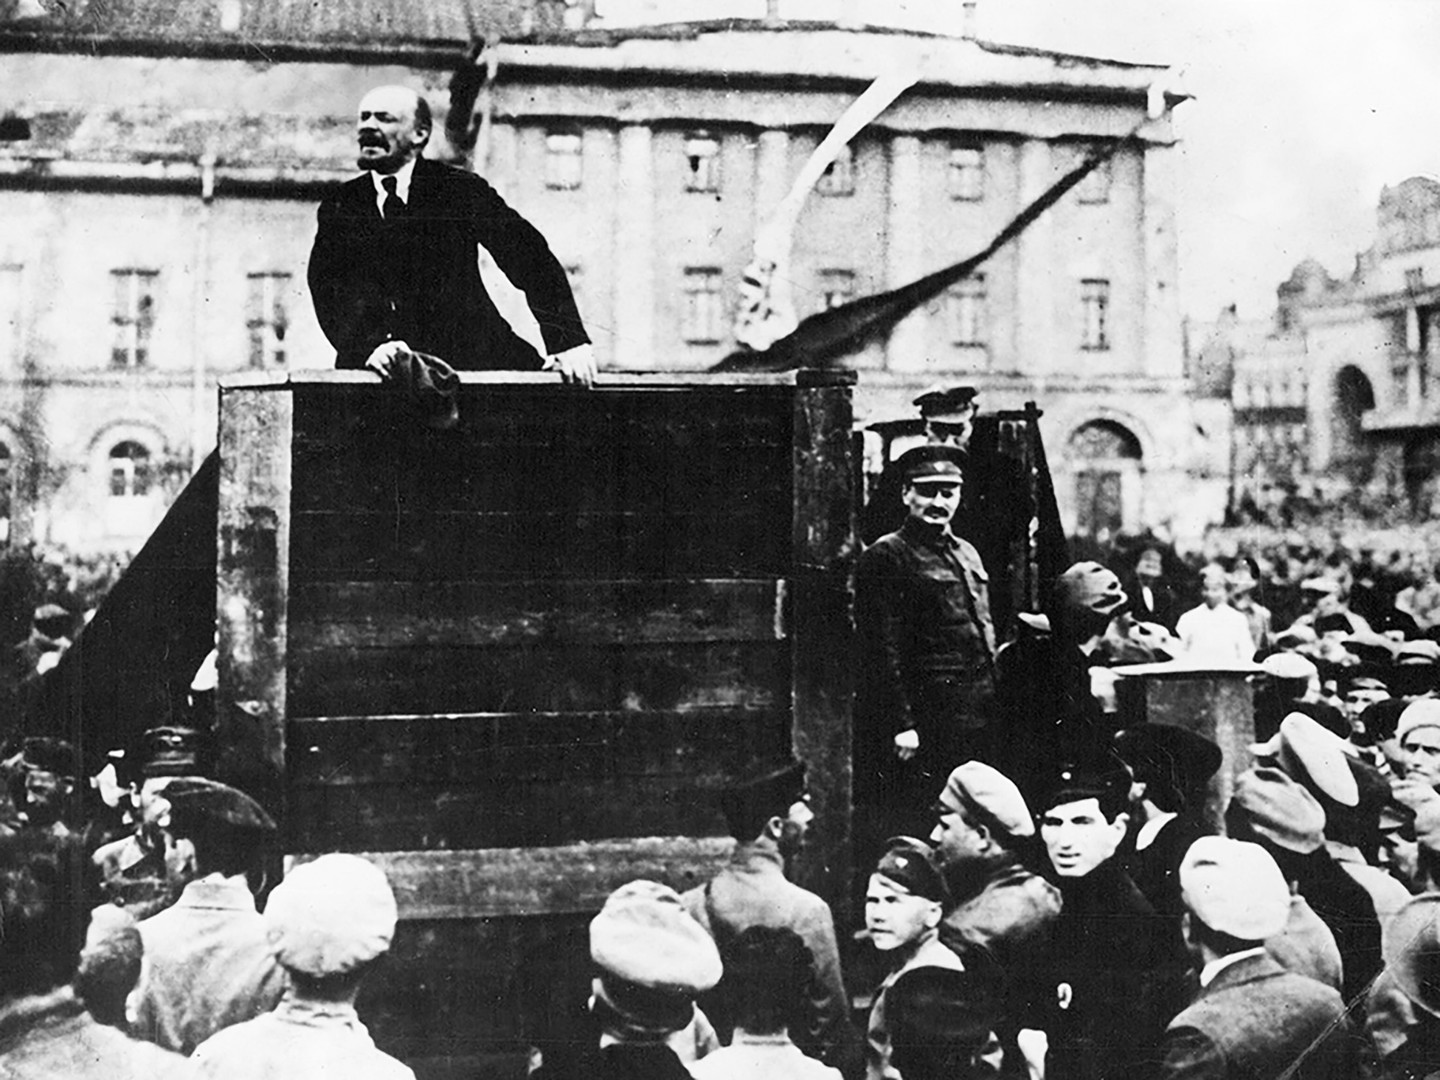 Vladimir Lenin addresses crowd In Petrograd's Sverdlov Square in 1919. Leon Trotsky stands on the right.